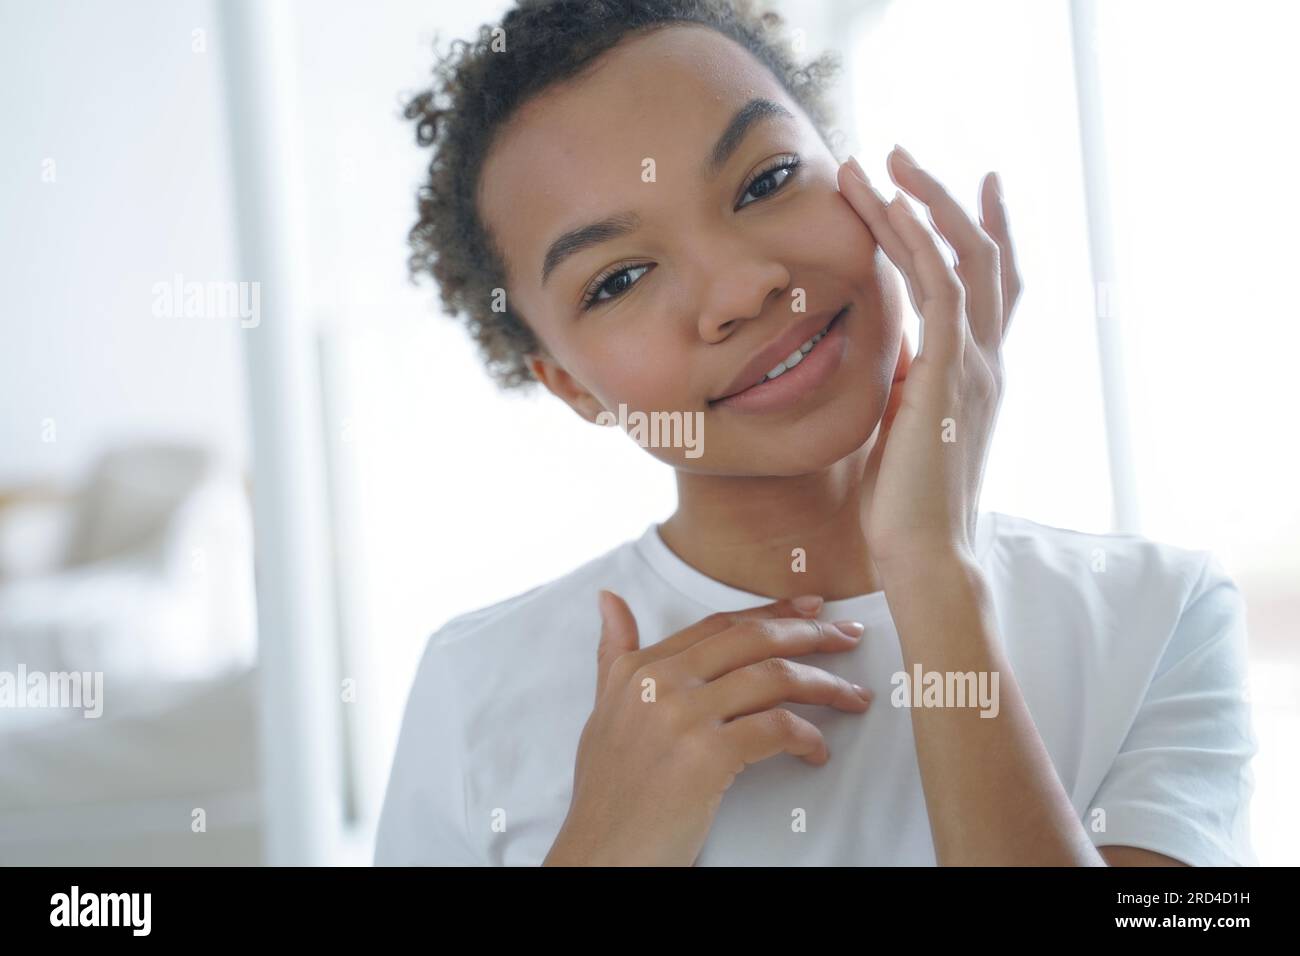 Ein hübsches afroamerikanisches Mädchen liebt Hautpflege, pflegt feuchtigkeitsspendende Creme, strahlt natürliche Schönheit aus. Stockfoto